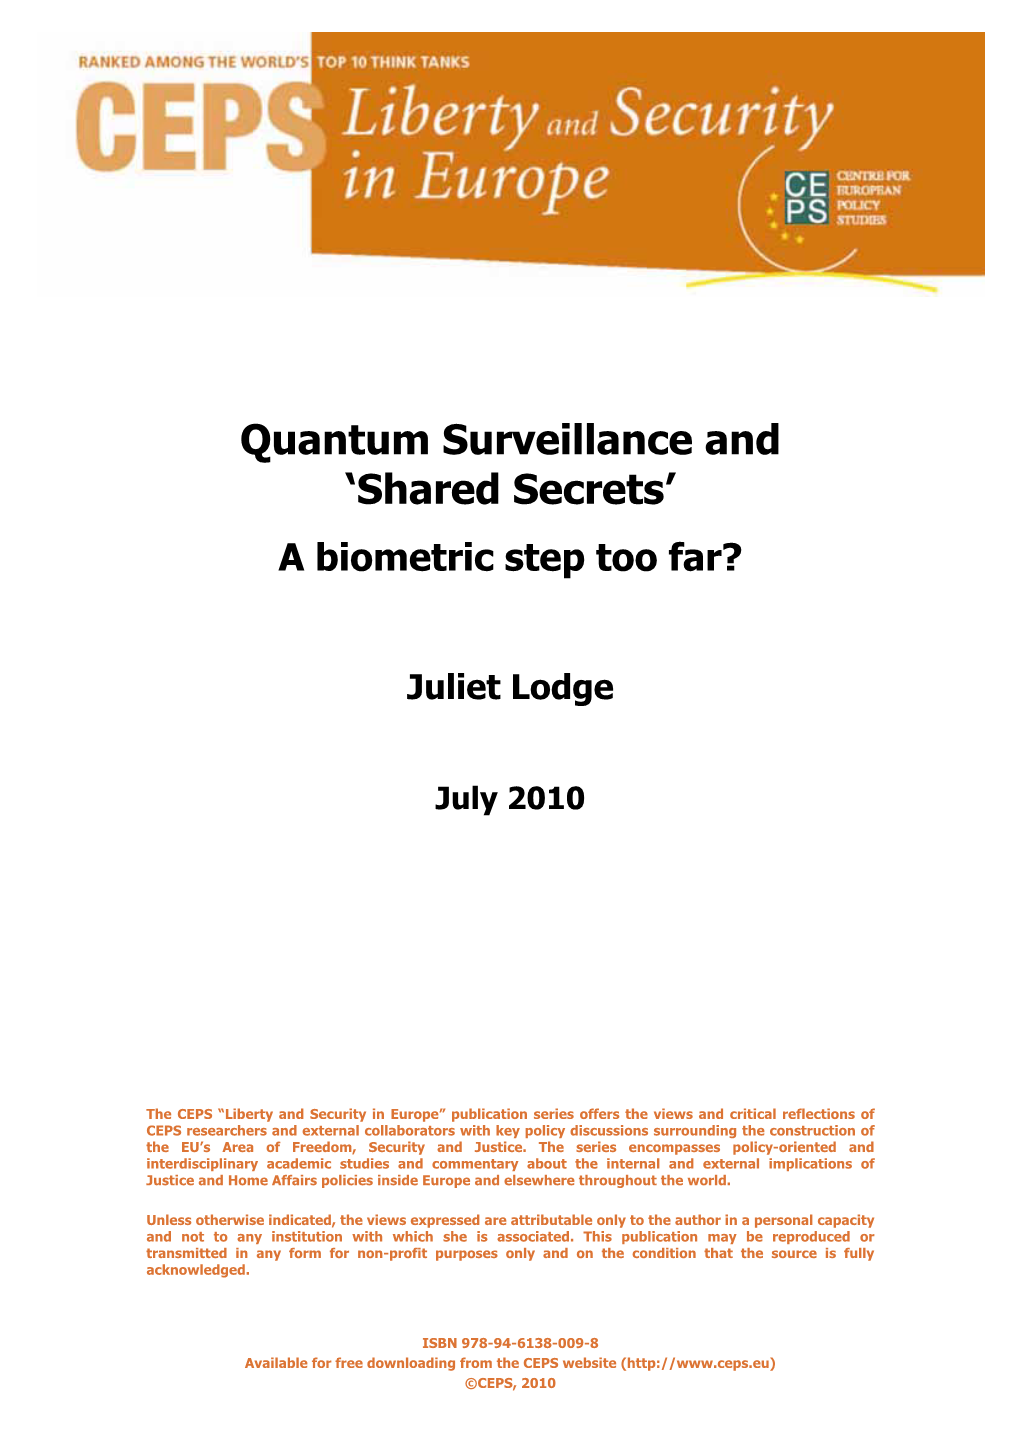 Quantum Surveillance and ‘Shared Secrets’ a Biometric Step Too Far?